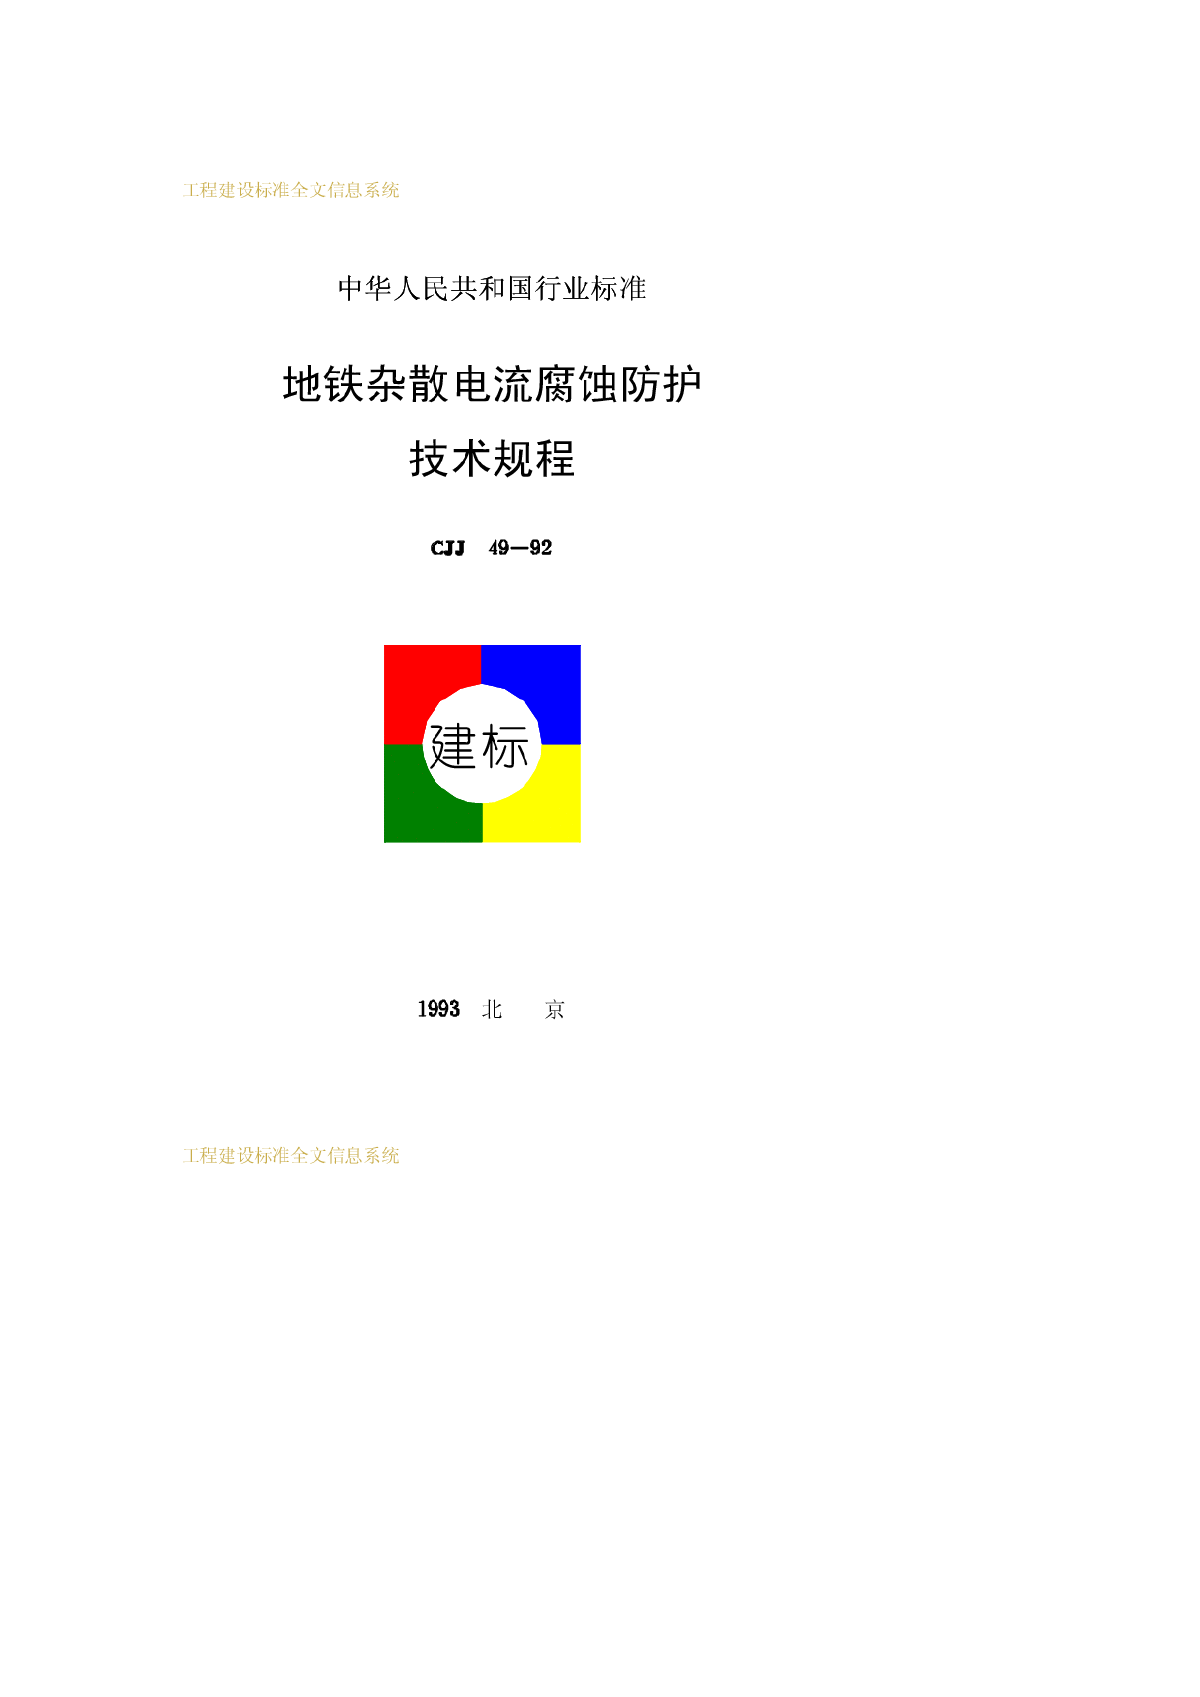 CJJ49-1992地铁杂散电流腐蚀防护技术规程-图一